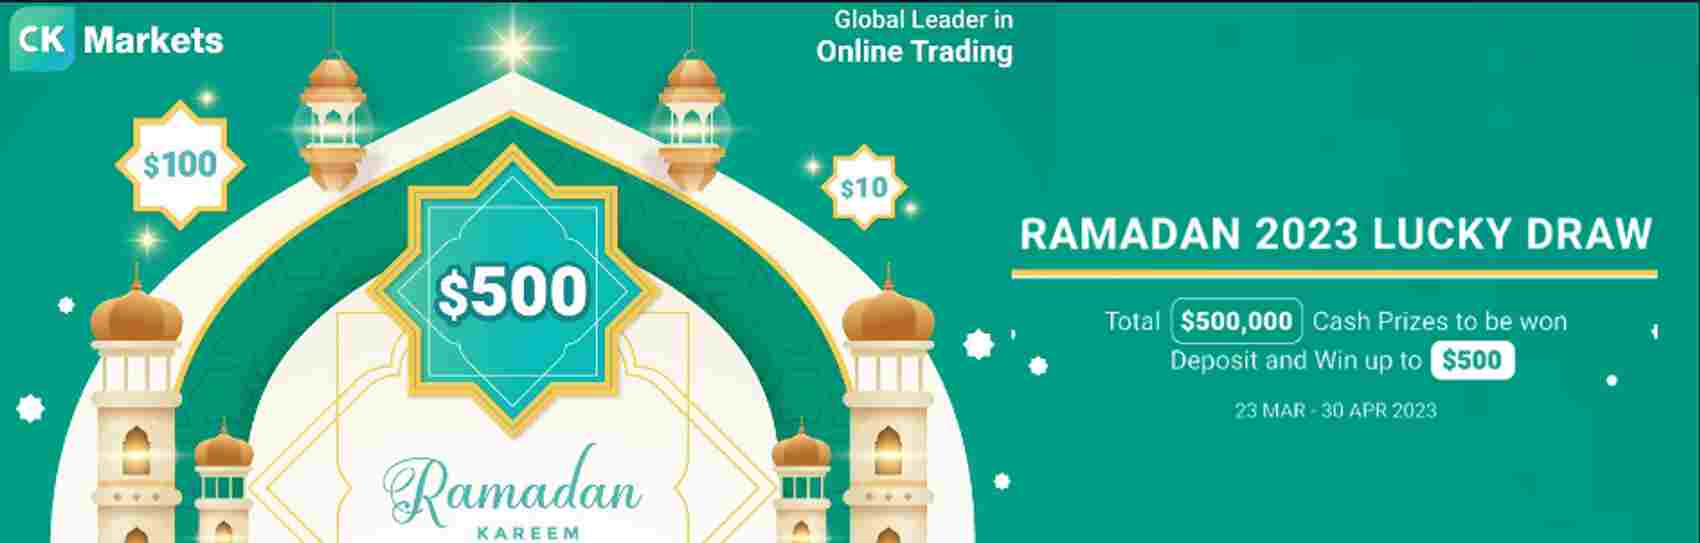 RAMADAN 2023 Lucky Draw – CK Markets